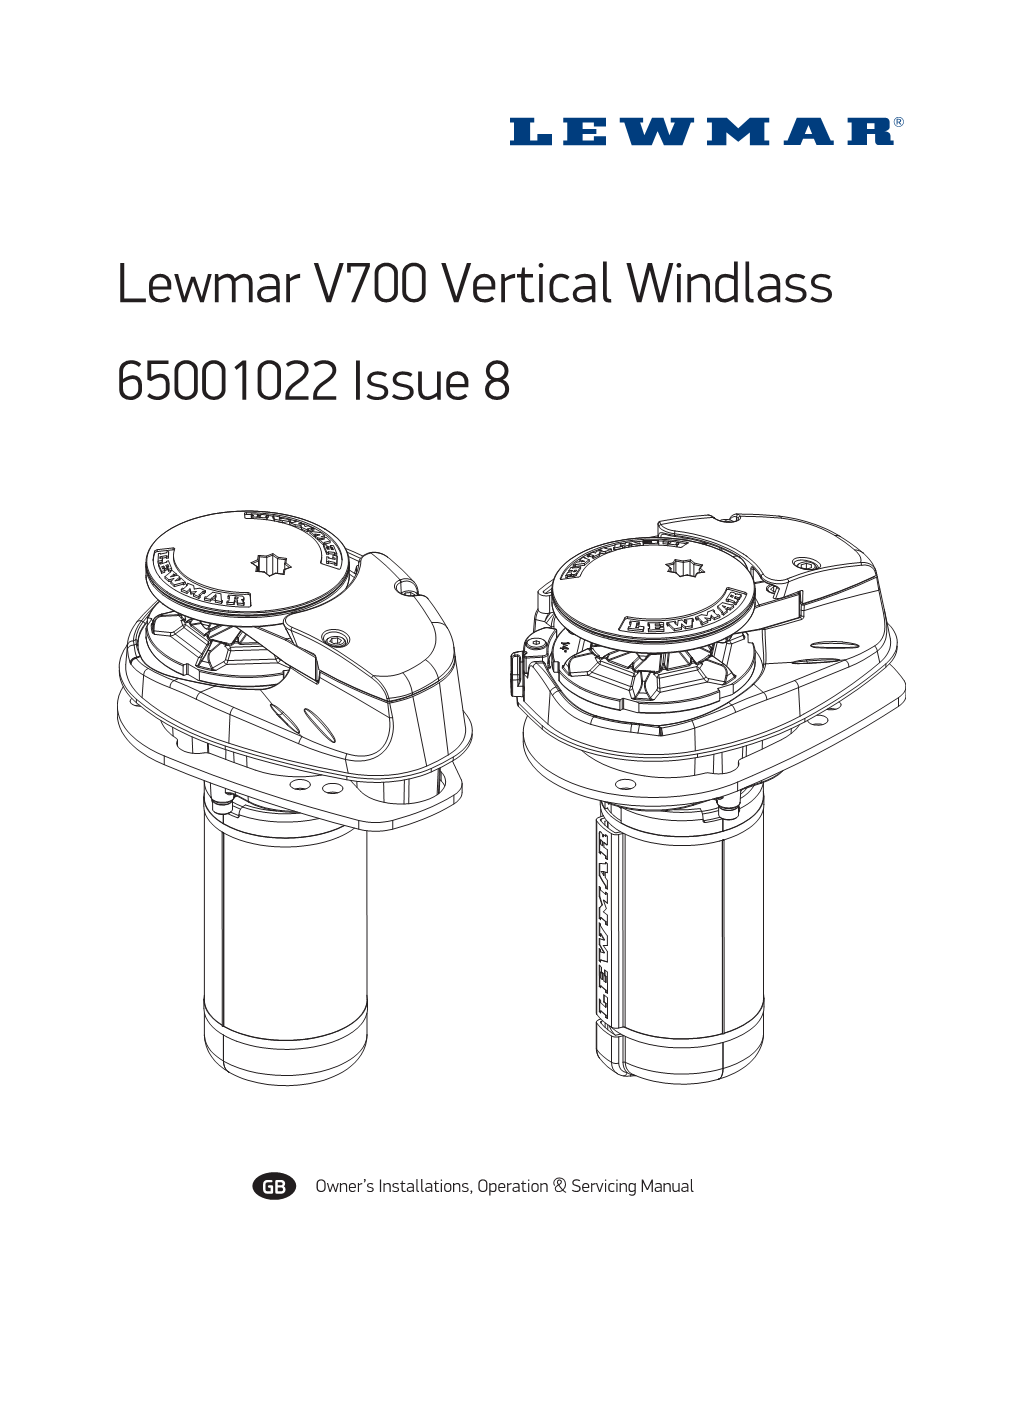 Lewmar V700 Vertical Windlass 65001022 Issue 8